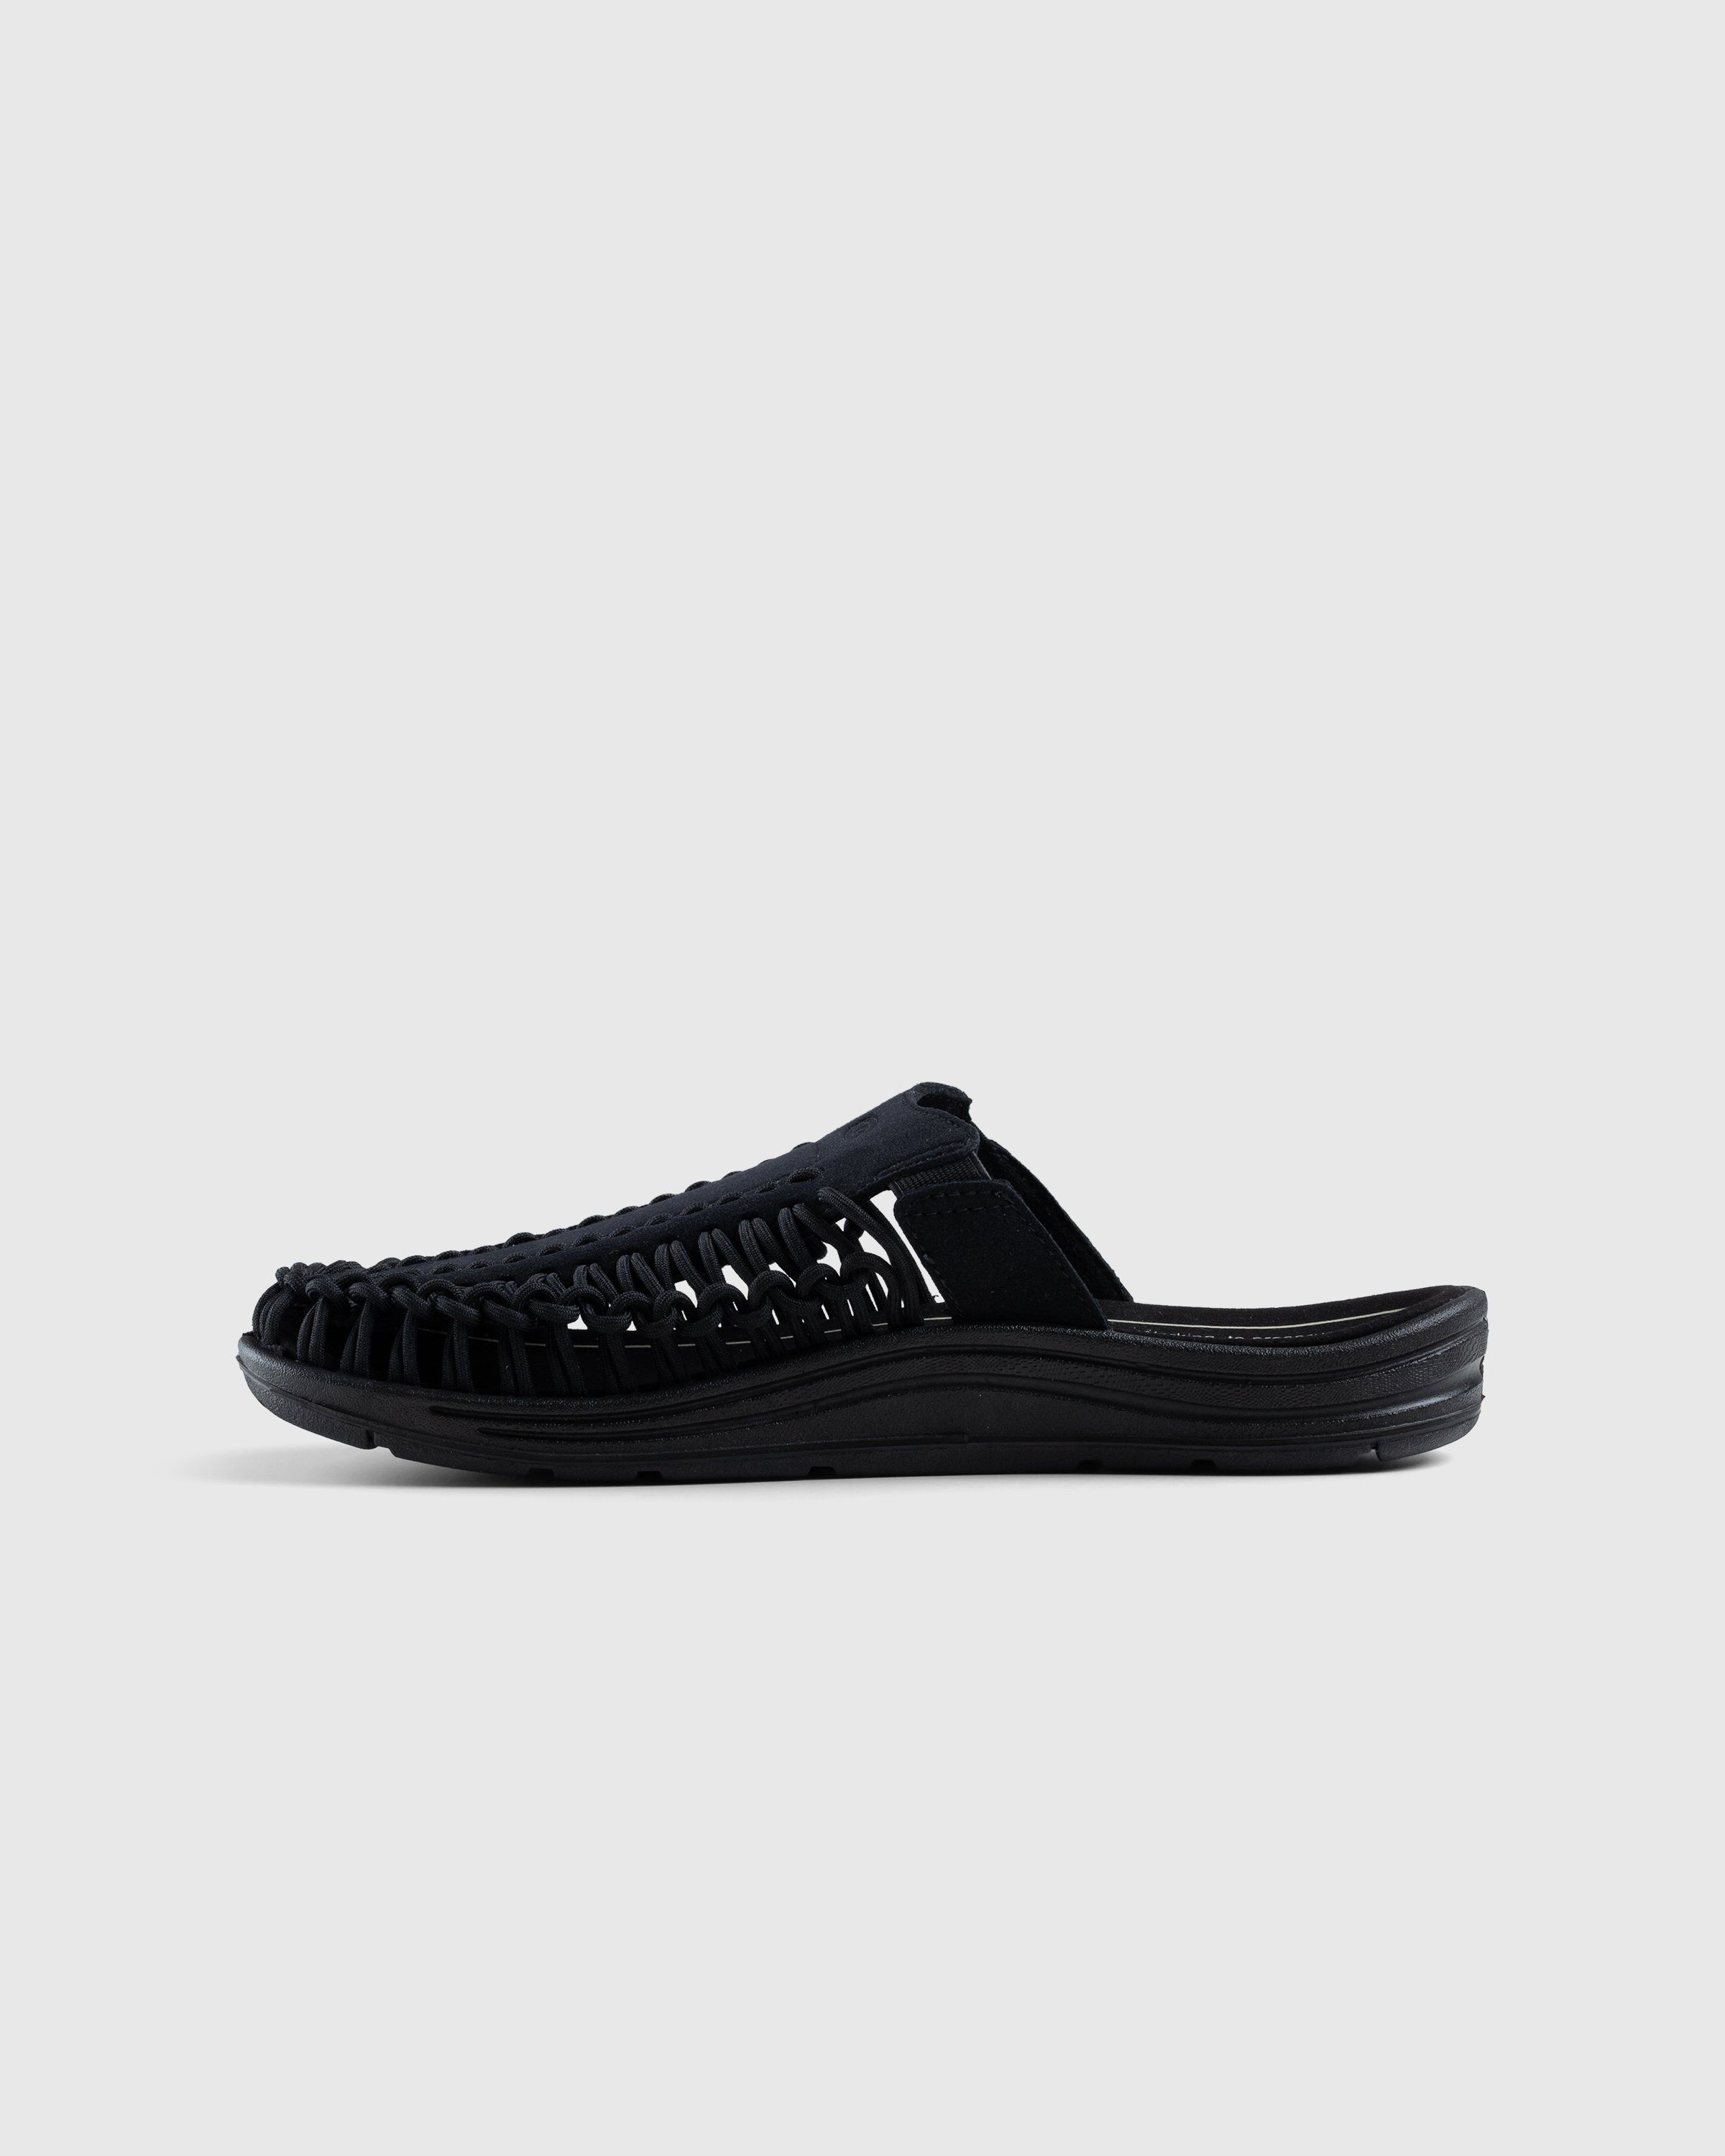 Keen – Uneek II Slide Black - Sandals & Slides - Black - Image 2